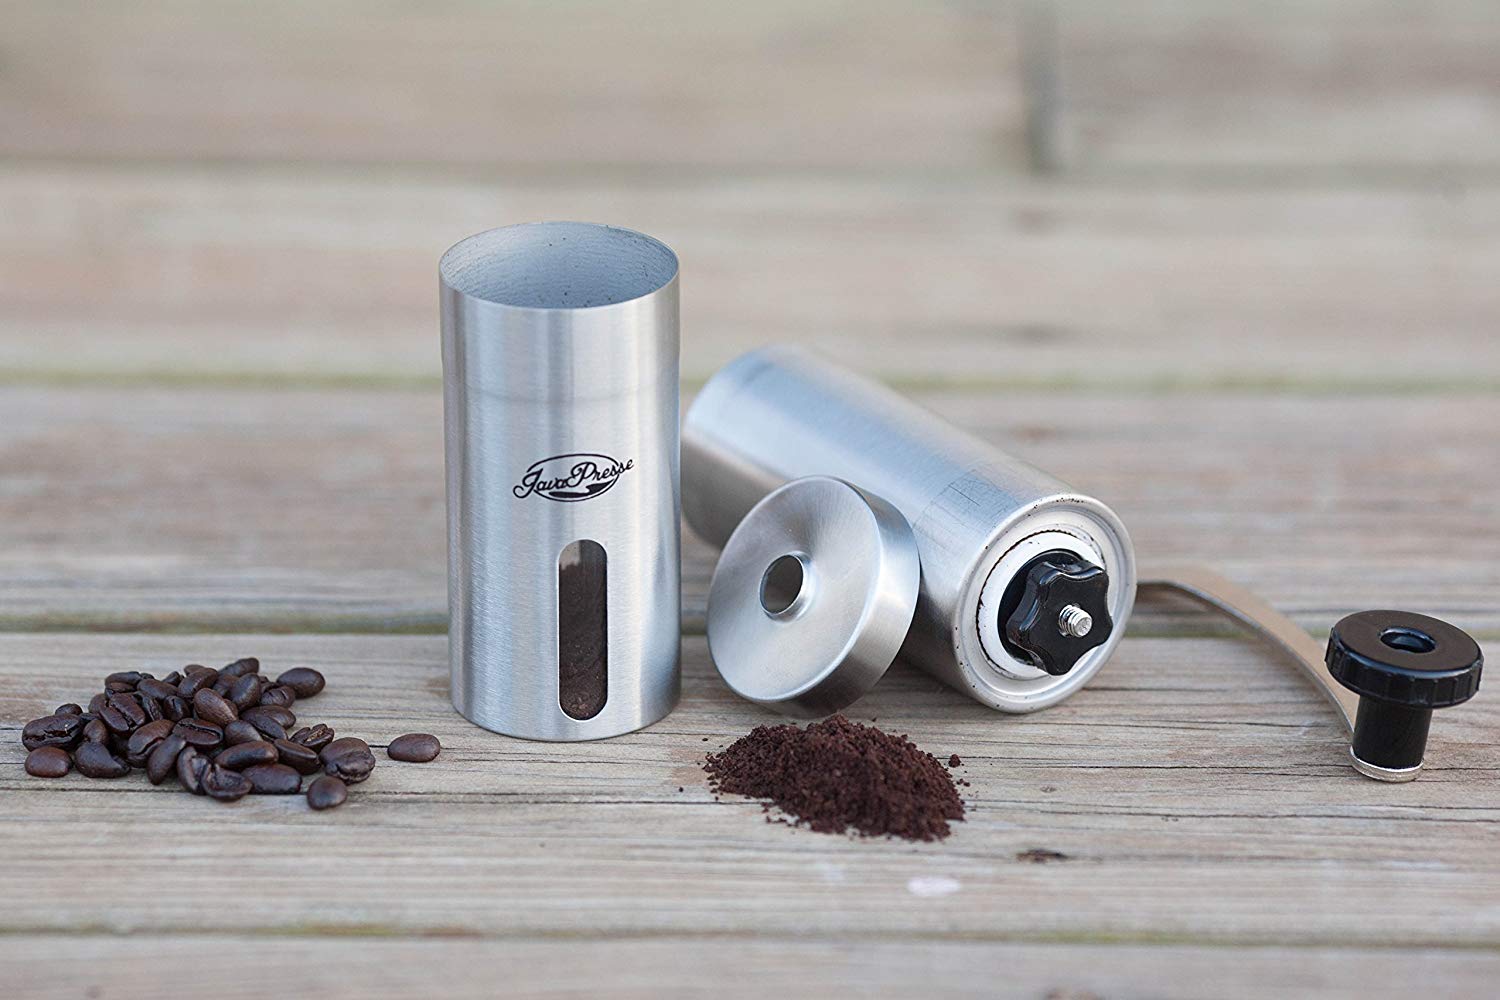 JavaPresse Manual Coffee grinder